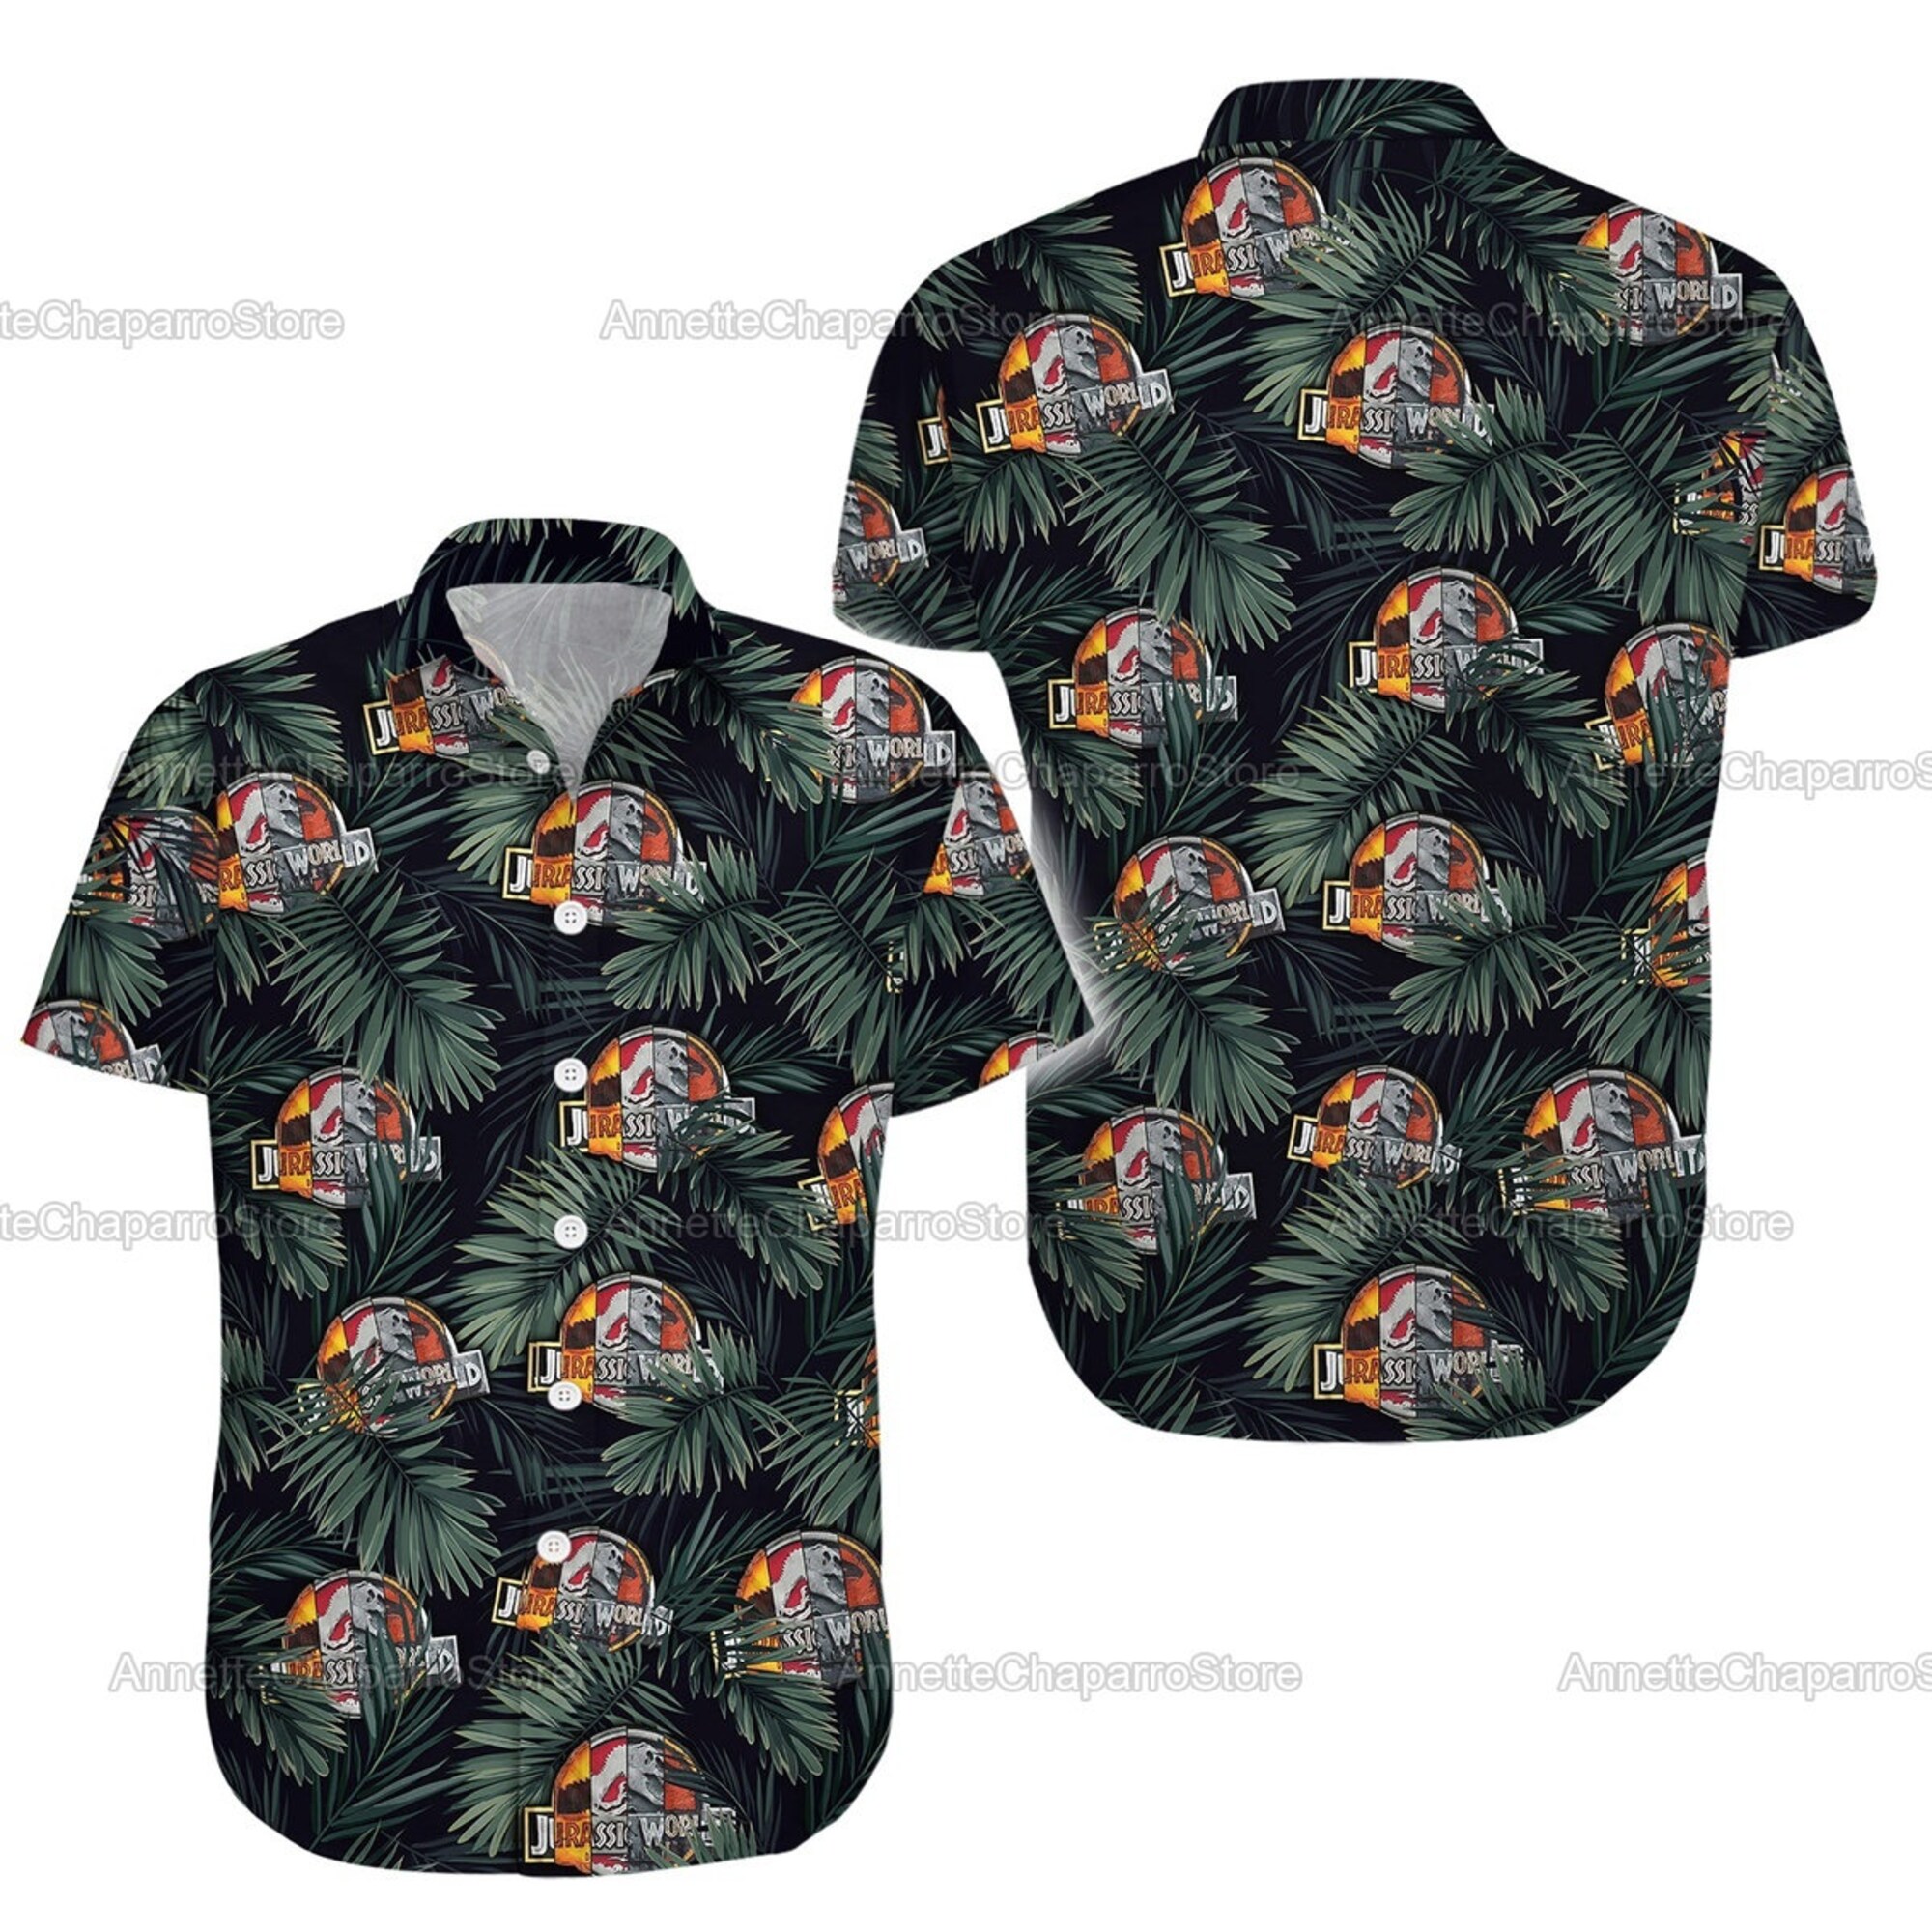 Discover Jurassic World Hawaii Shirt